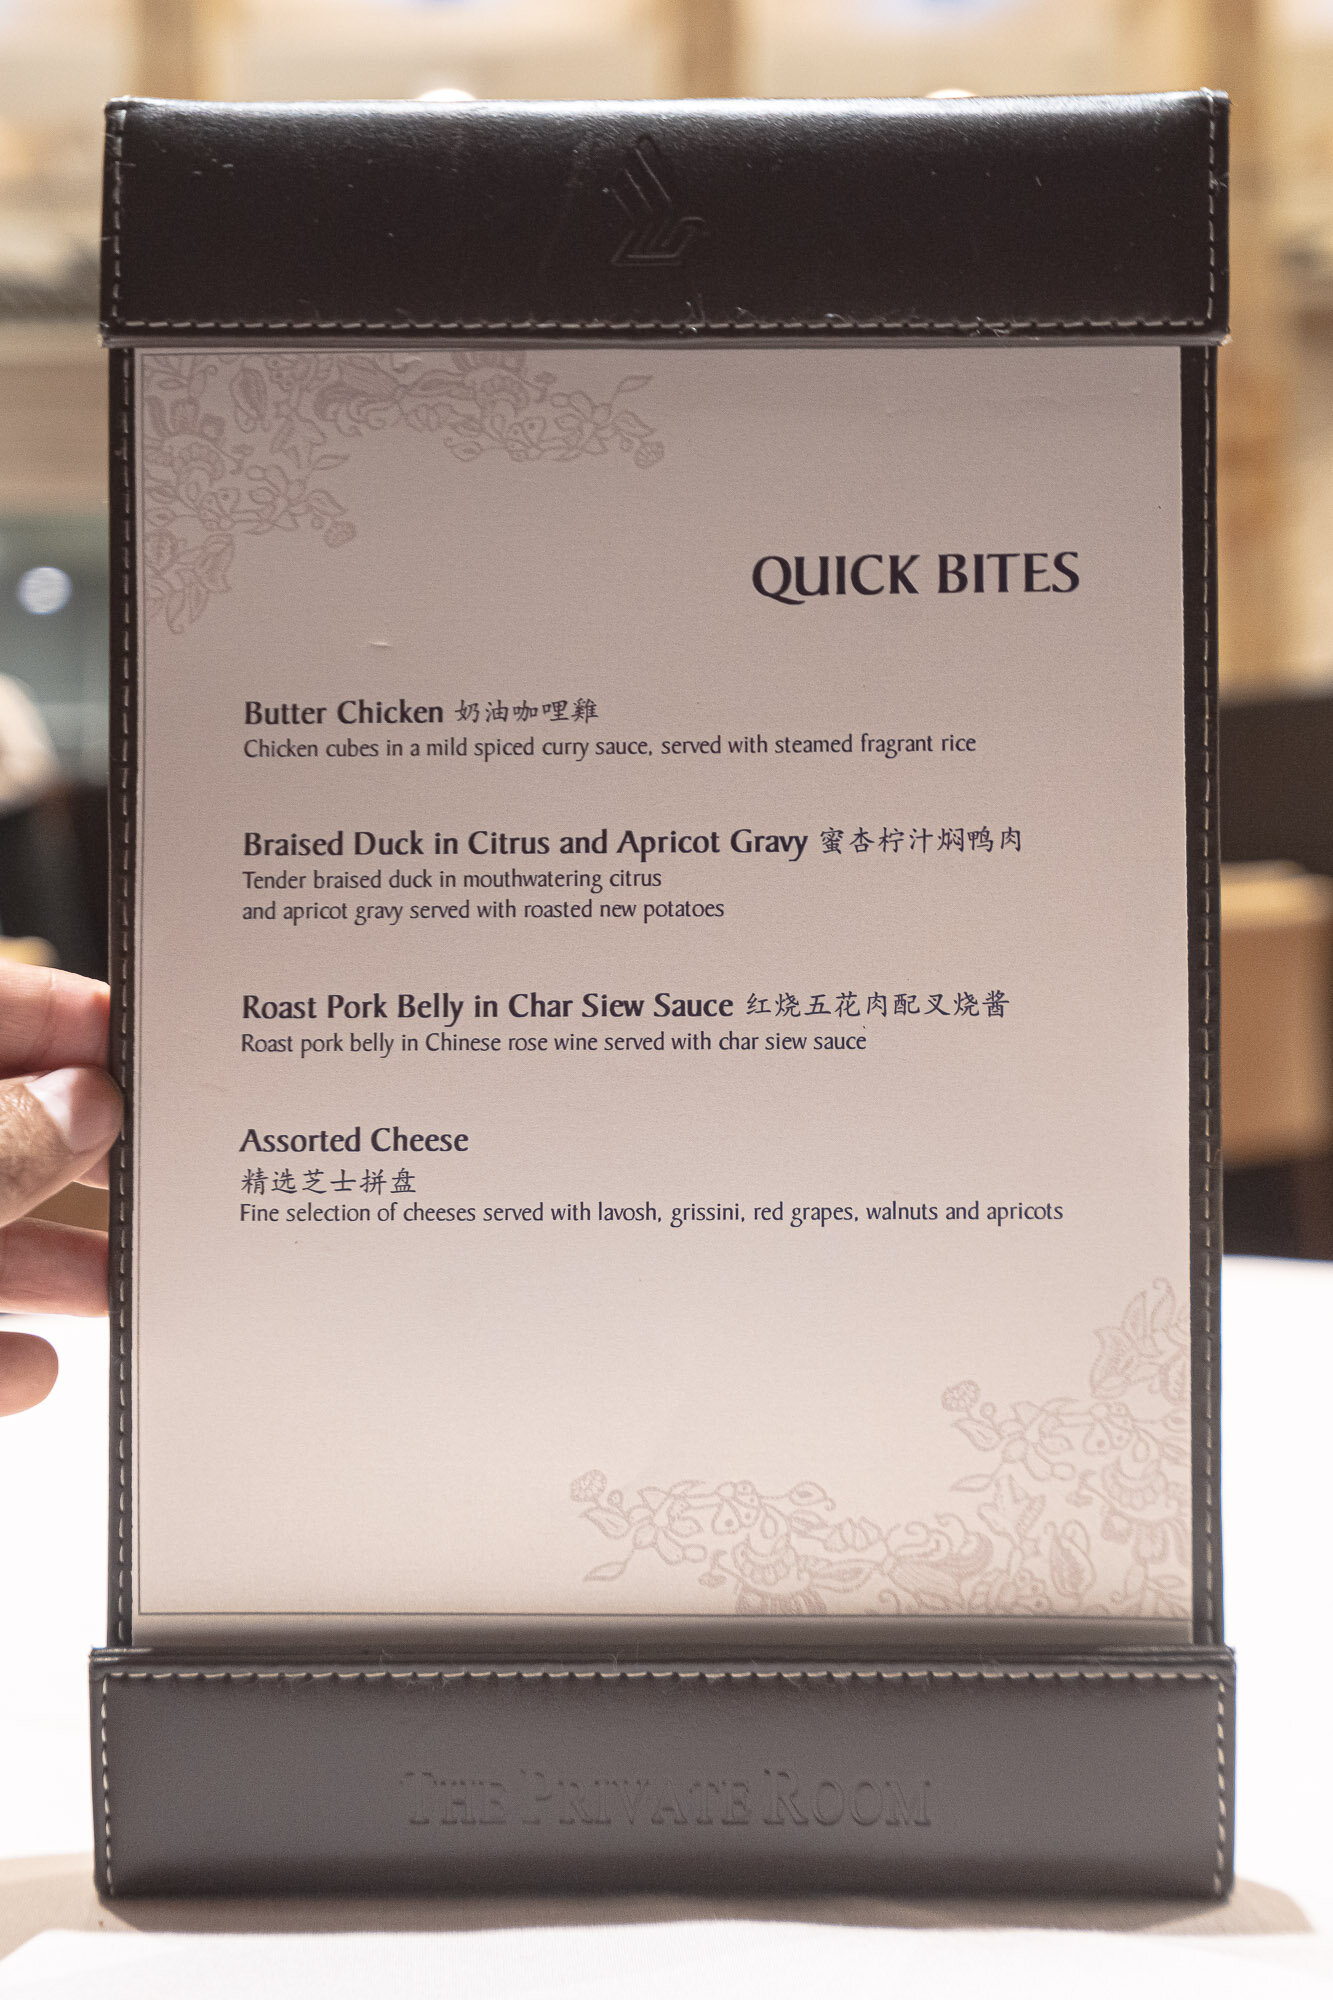 Quick bites menu